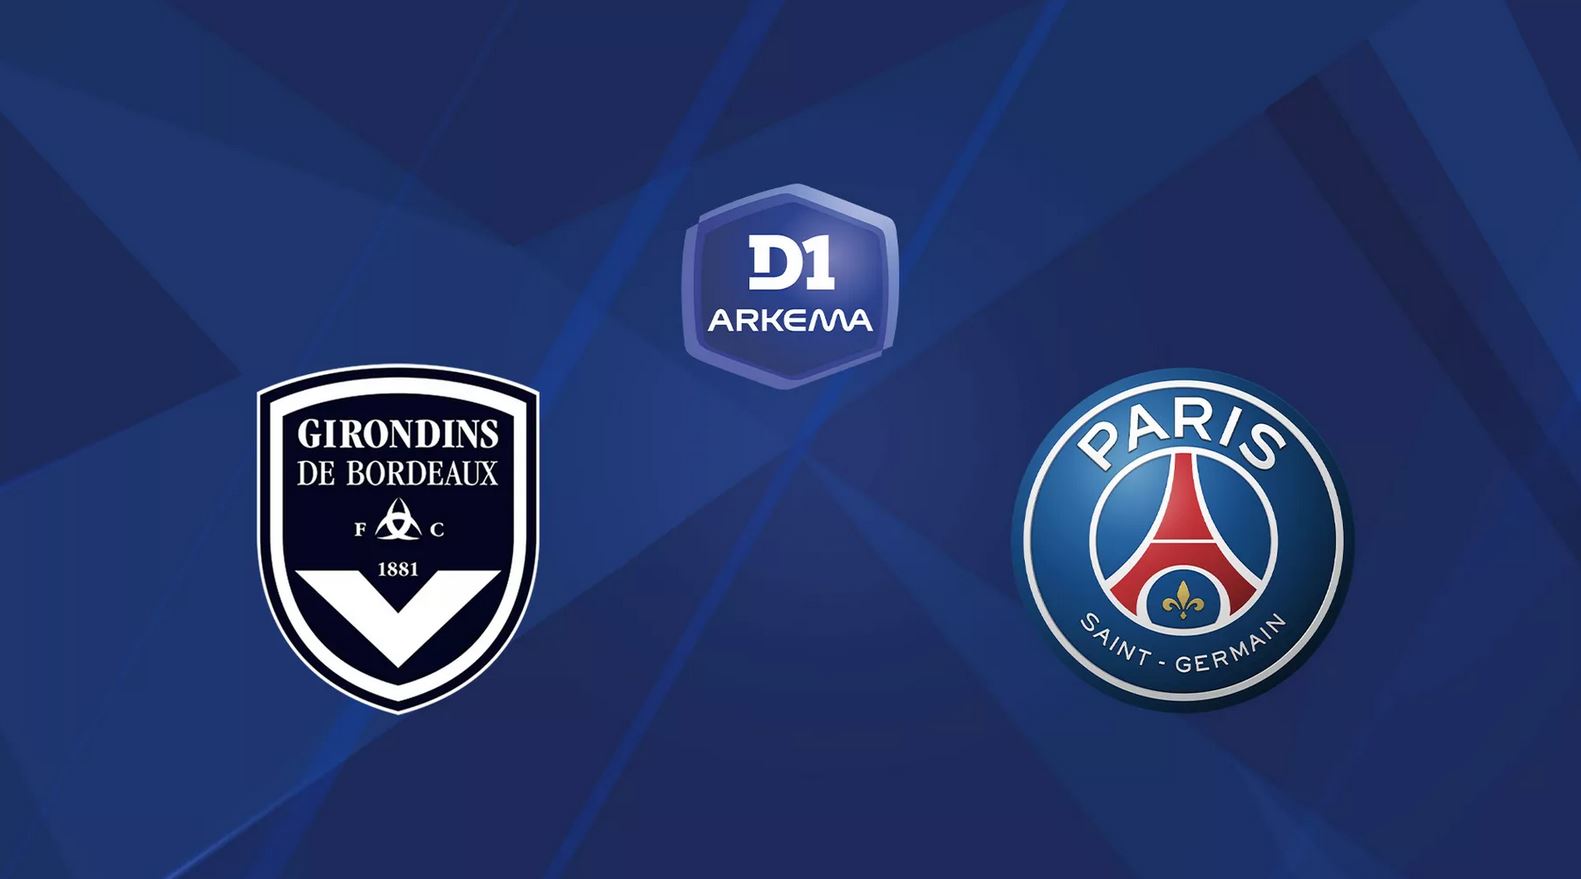 Bordeaux / Paris SG (TV/Streaming) Sur quelle chaîne et à quelle heure regarder la rencontre de D1 Arkéma ?